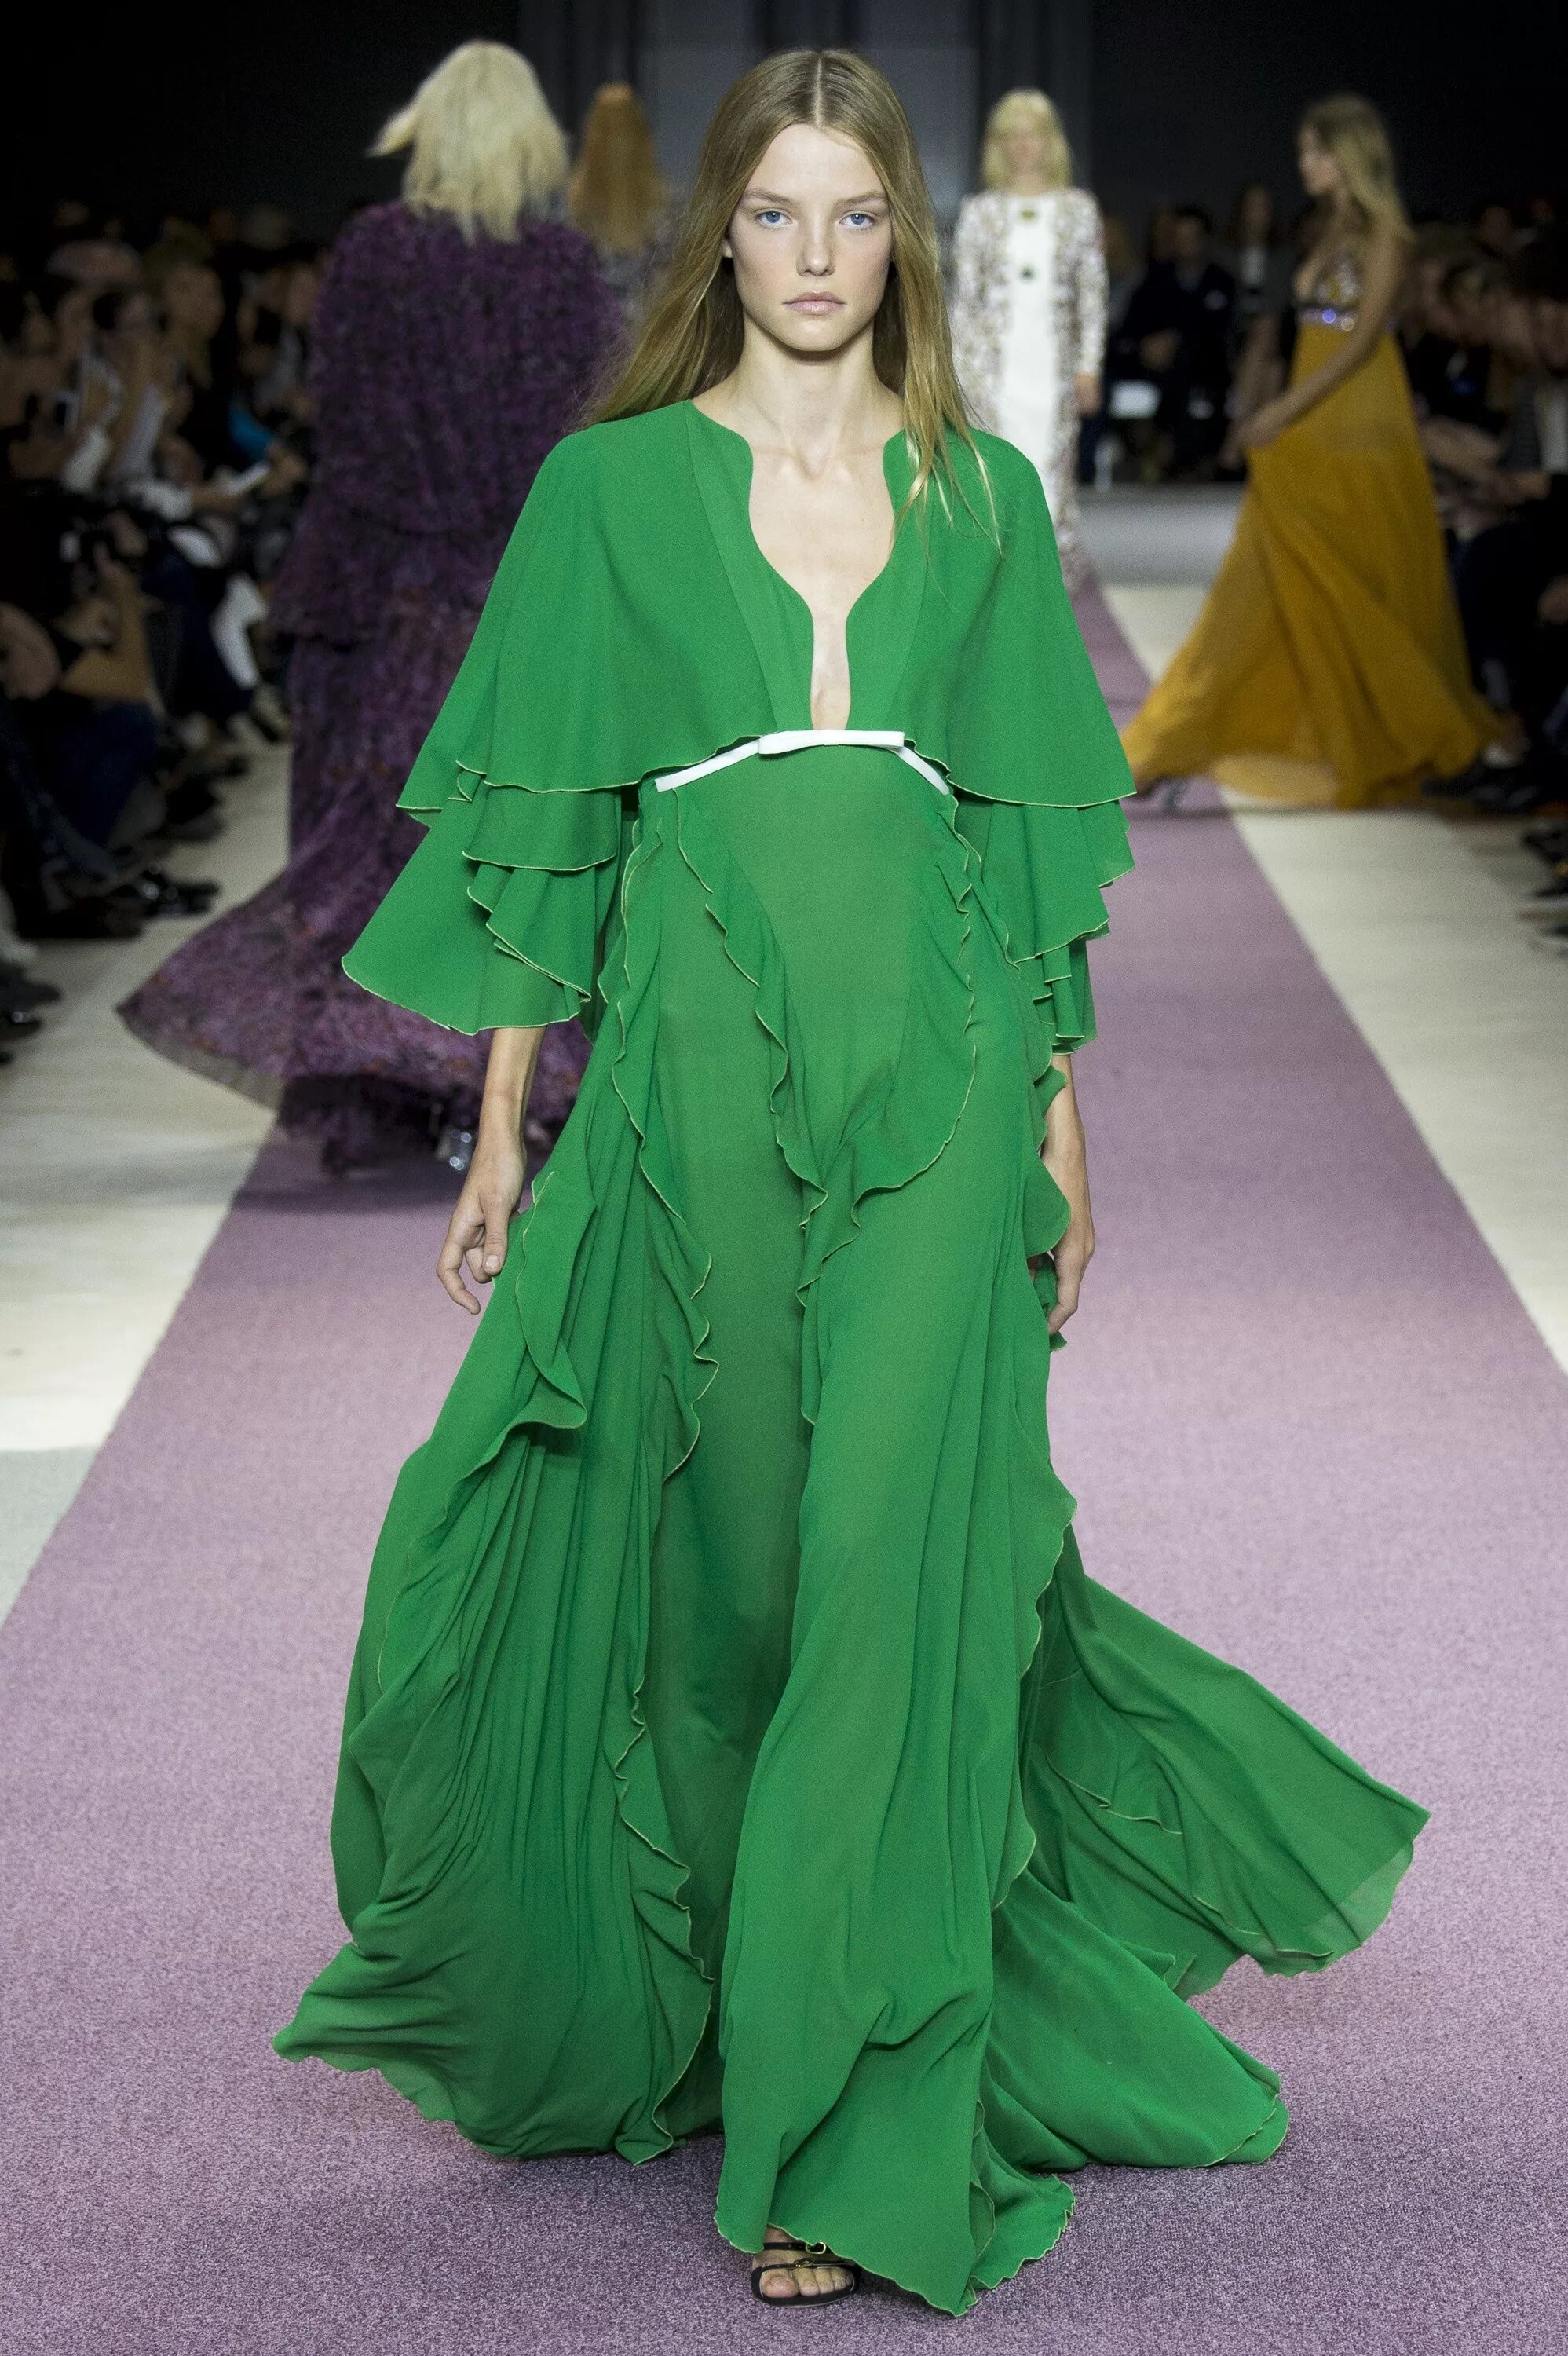 Greening mod. Зеленое платье подиум. Платье зеленого цвета. Зеленый цвет в моде. Платье салатового цвета.